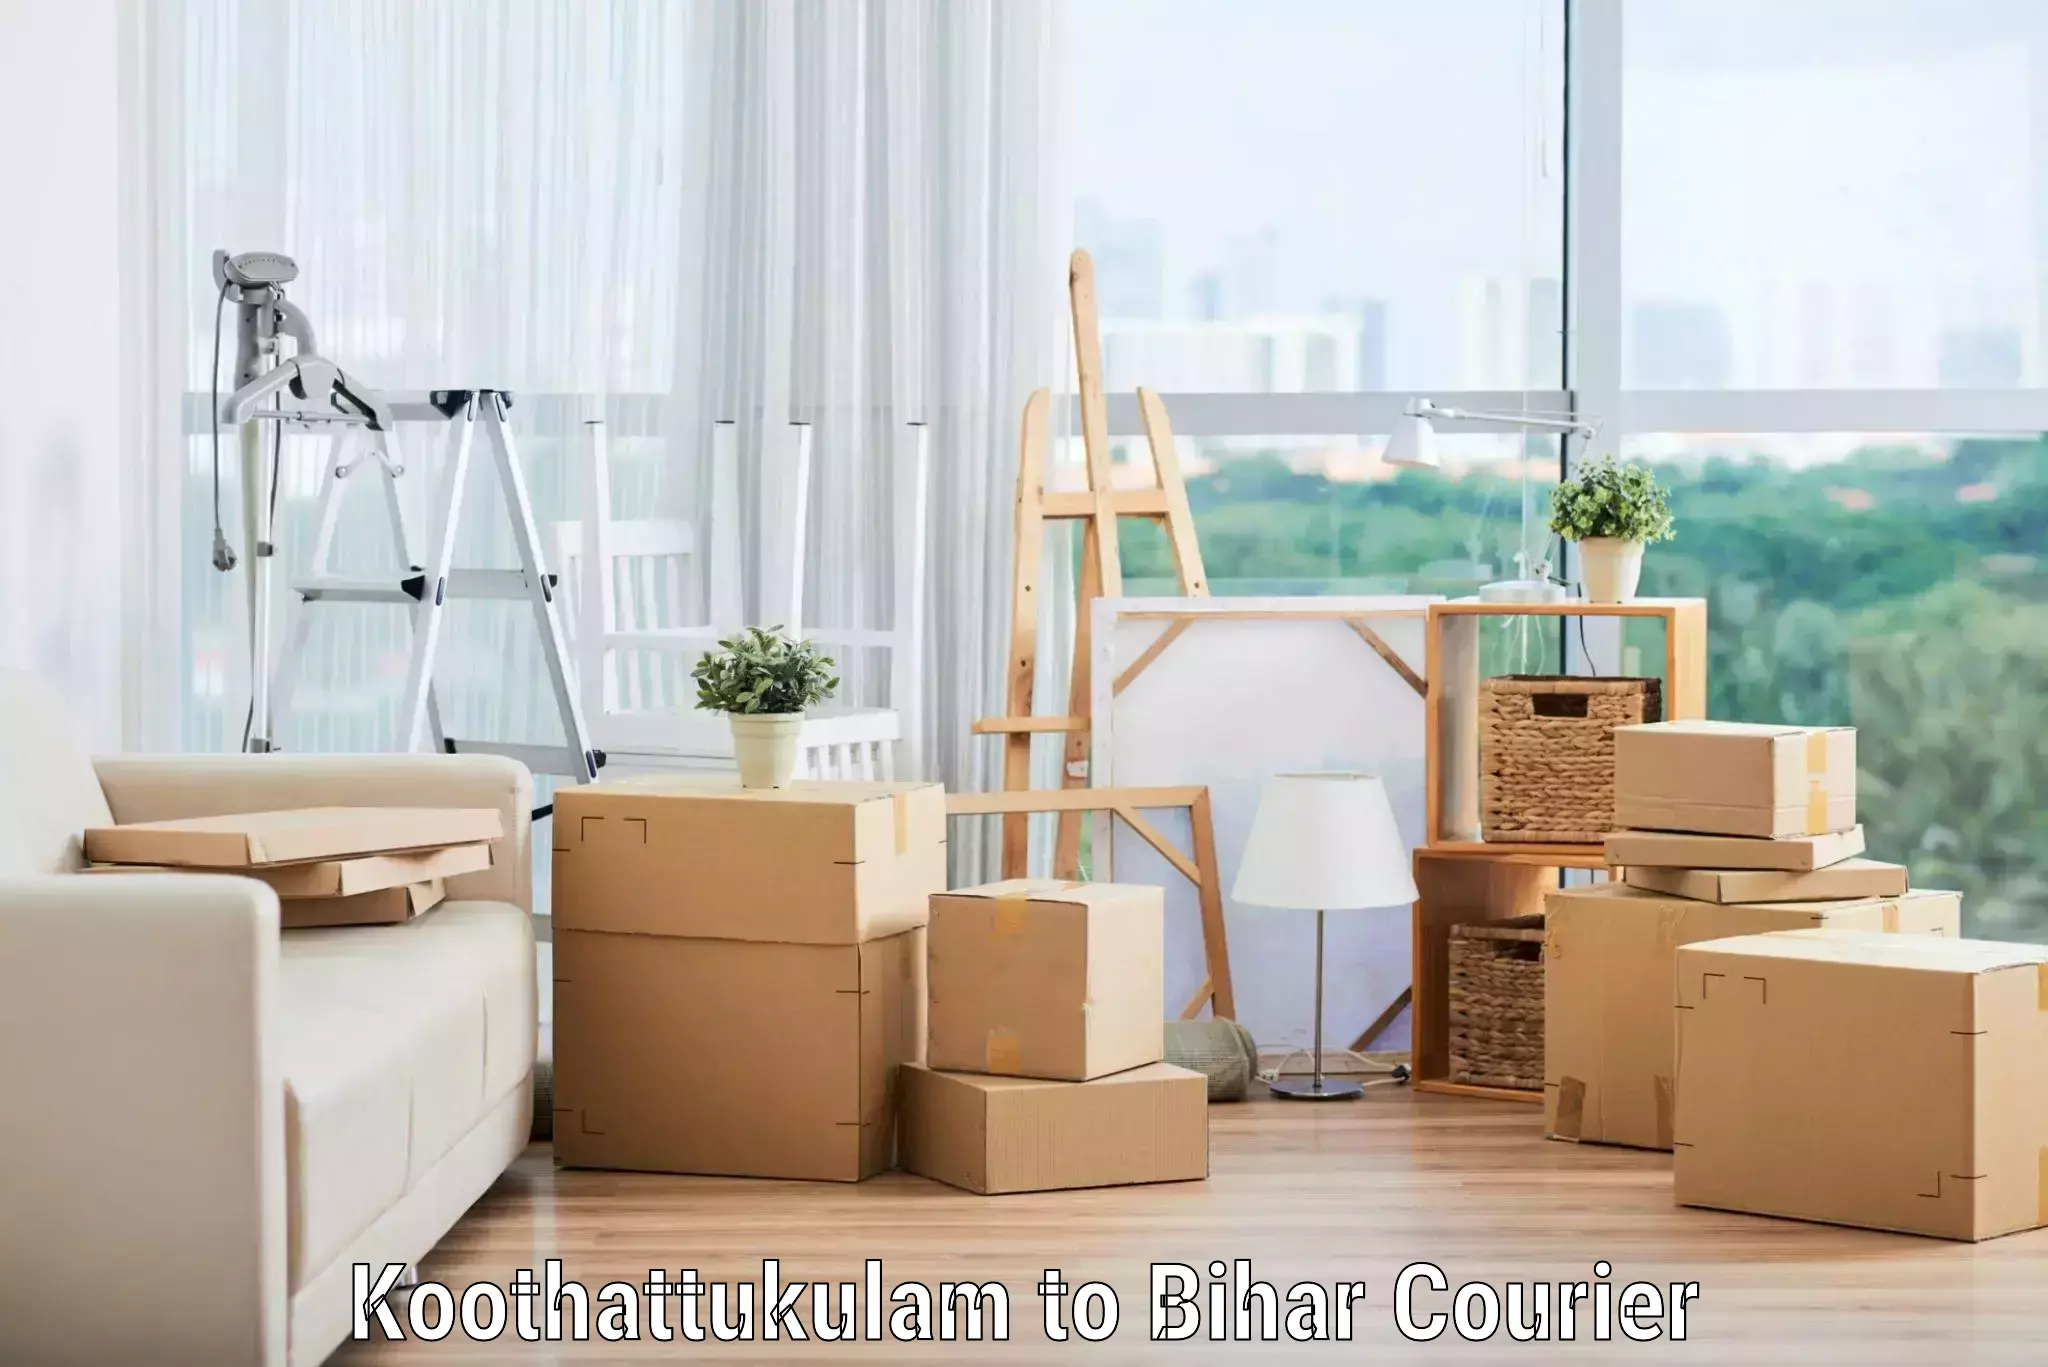 Cost-effective moving solutions Koothattukulam to Biraul